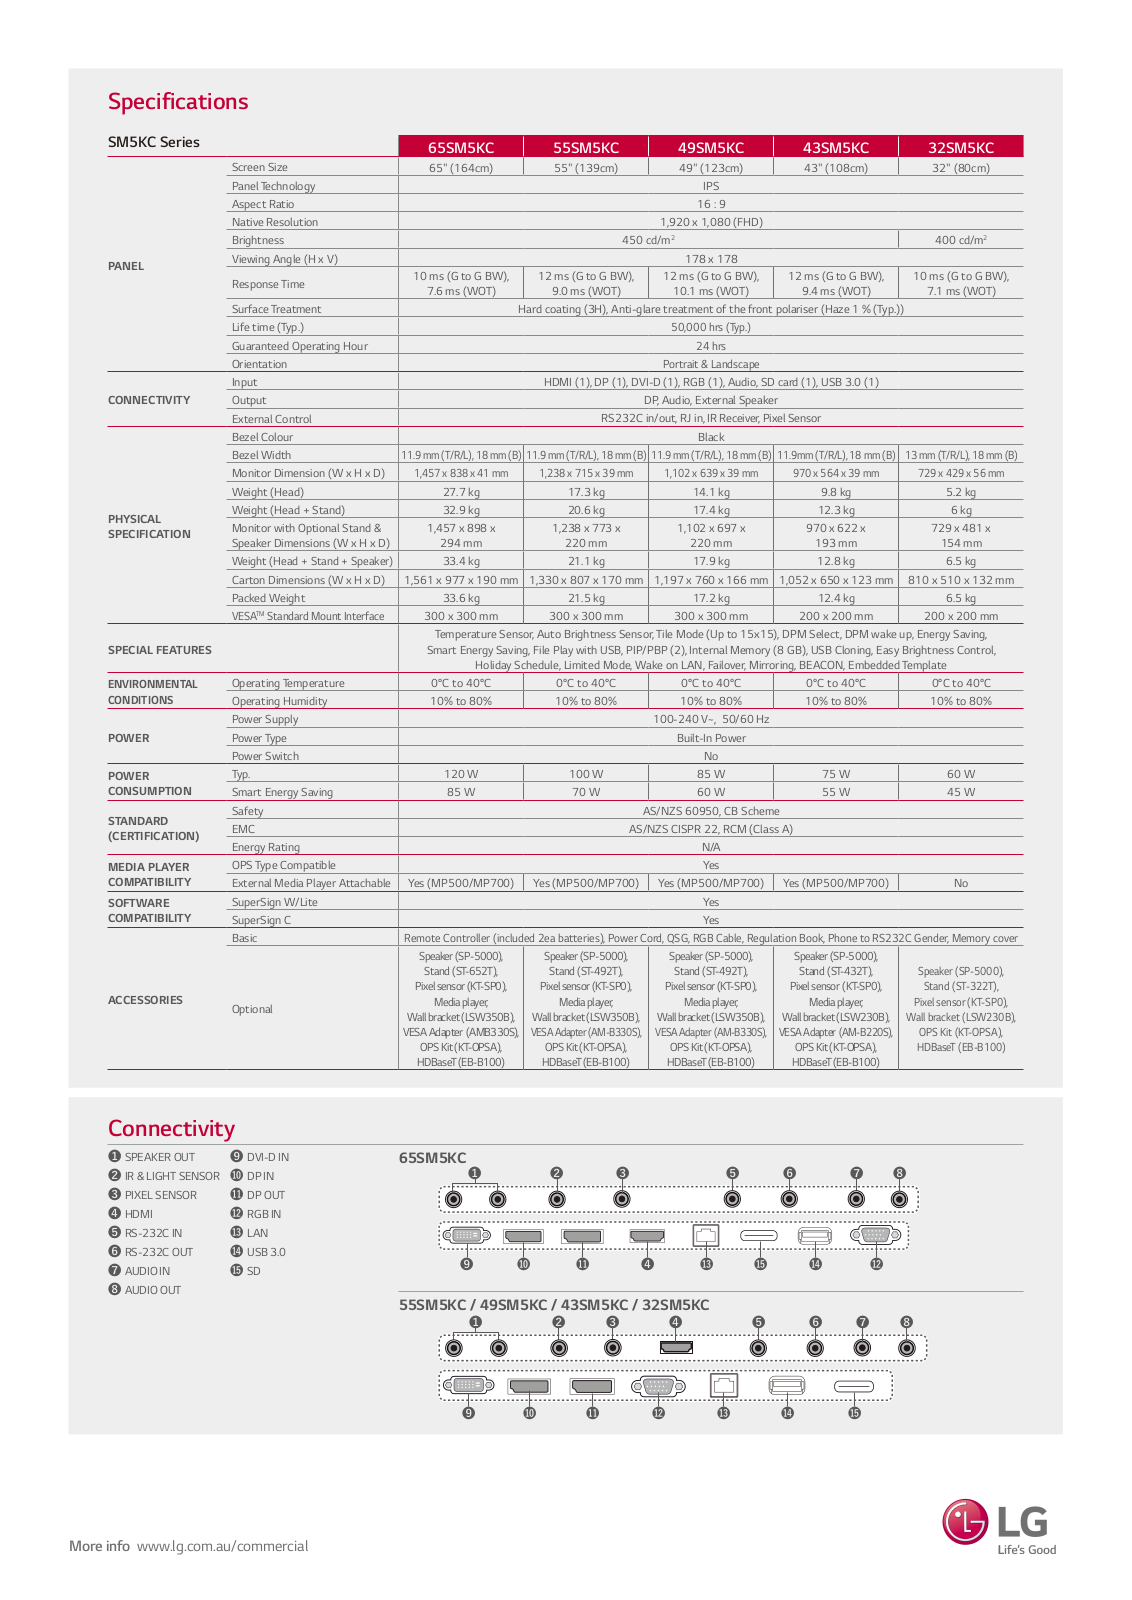 LG 43SM5KC User Manual